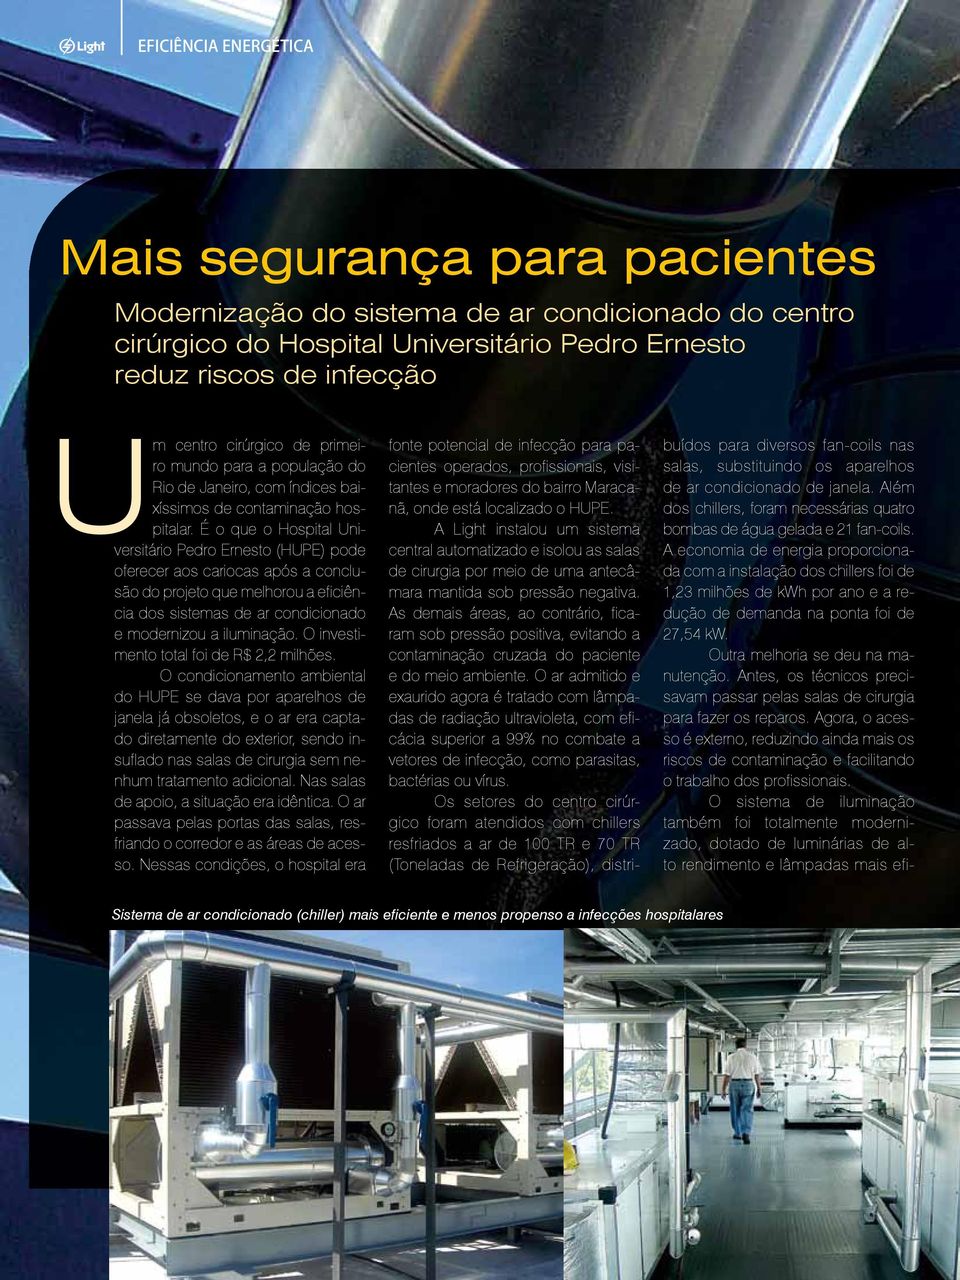 É o que o Hospital Universitário Pedro Ernesto (HUPE) pode oferecer aos cariocas após a conclusão do projeto que melhorou a eficiência dos sistemas de ar condicionado e modernizou a iluminação.